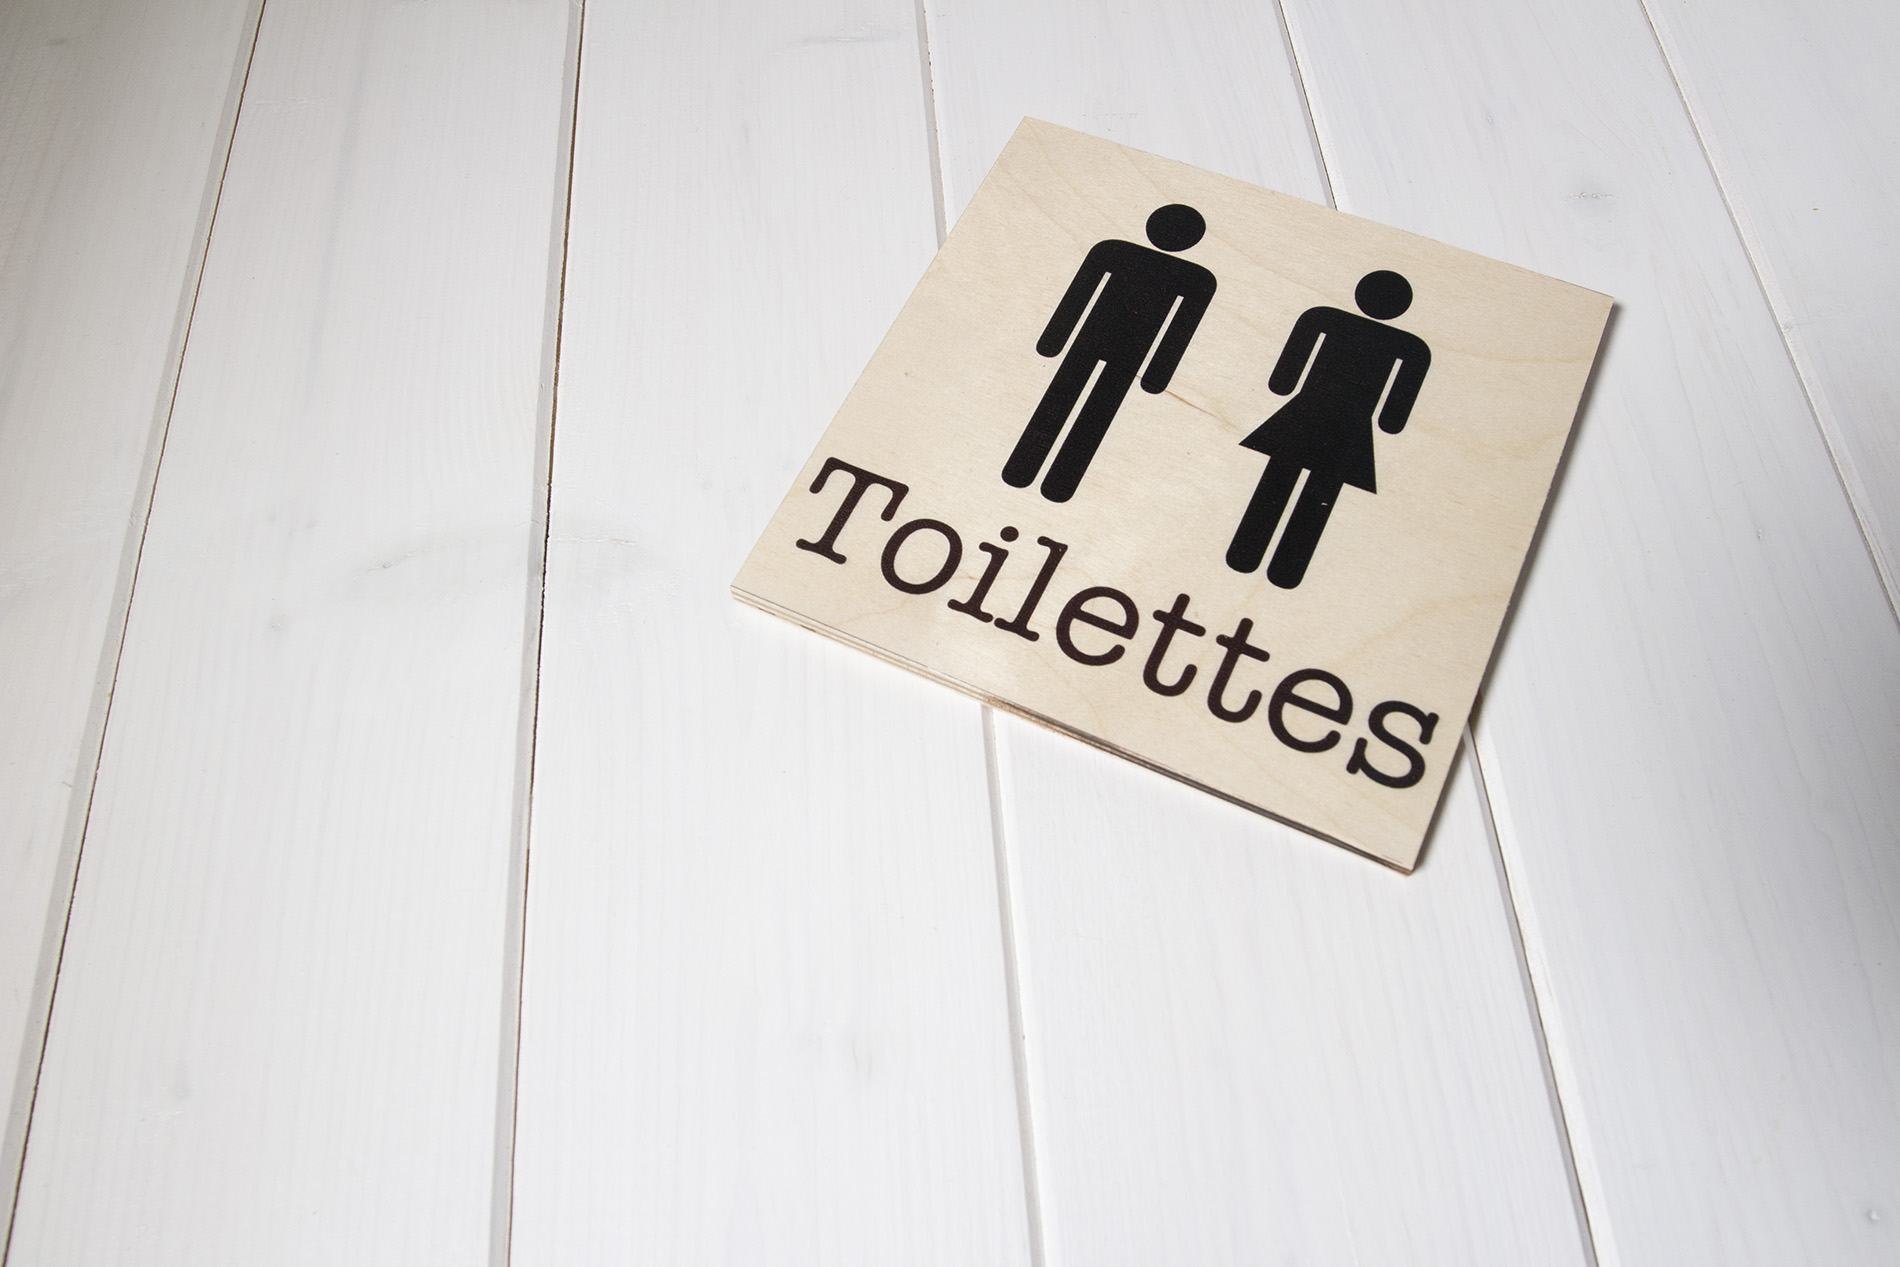 Segnaletica per locali di legno - WC Toilettes